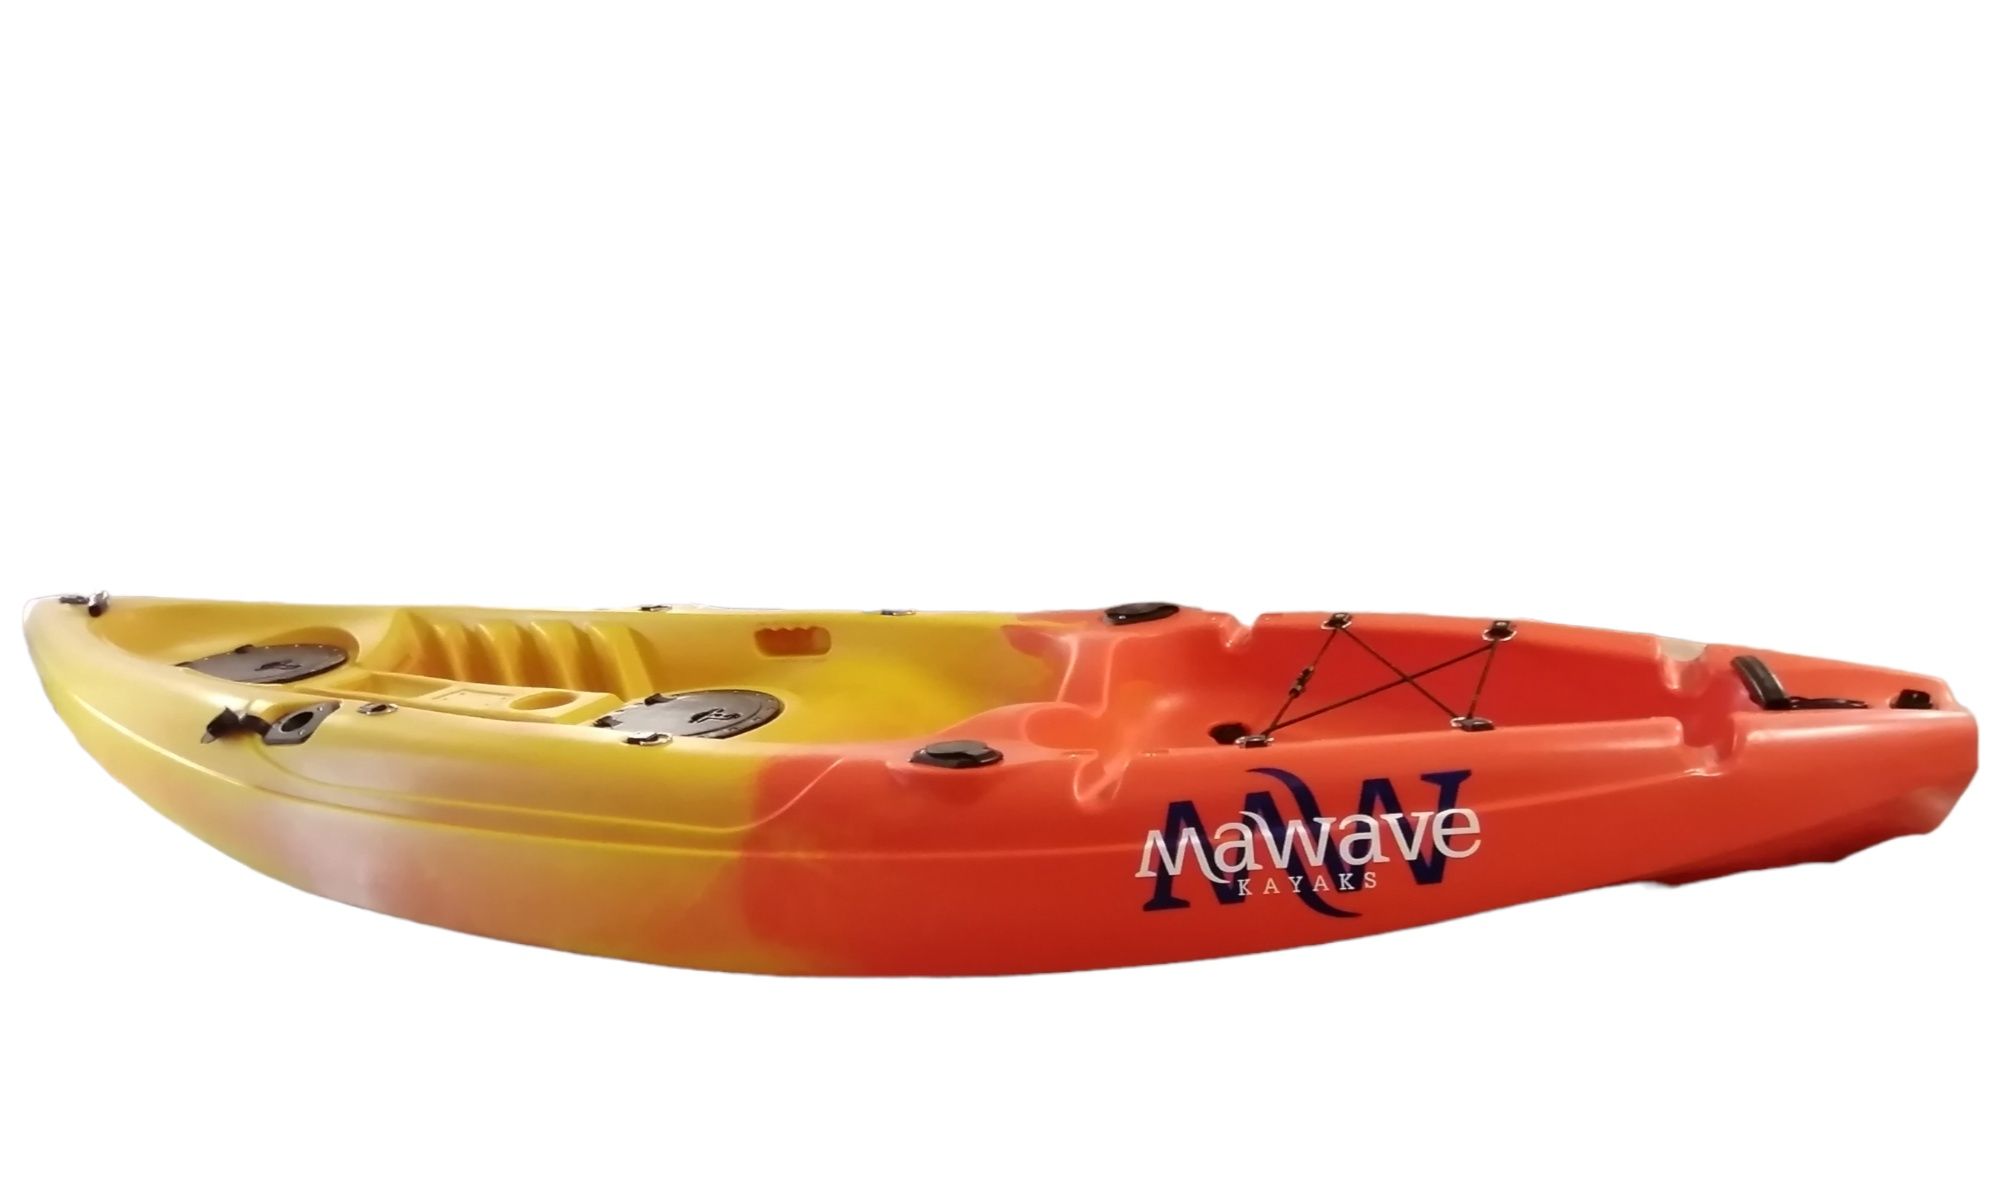 MaWave Kayak/s caiaque/s individuais rígidos NOVOS.